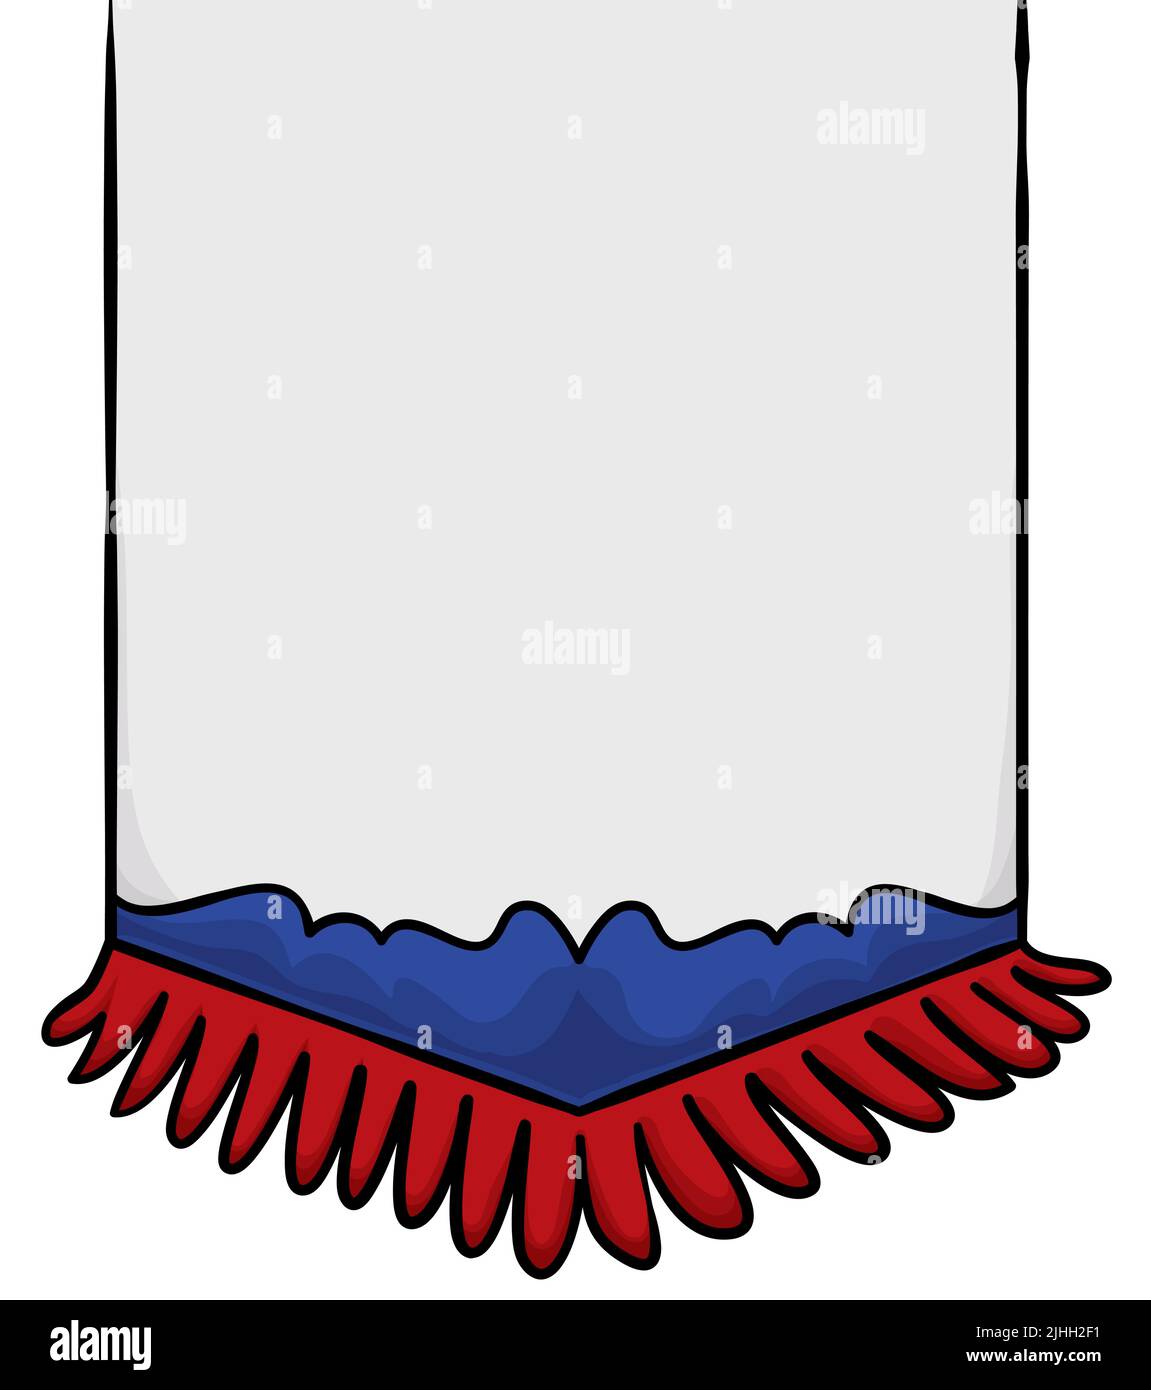 Pennino verticale o banner con spazio vuoto e bianco, decorato con frange blu e rosse che assomigliano ai colori russi. Design in stile cartoon con out Illustrazione Vettoriale